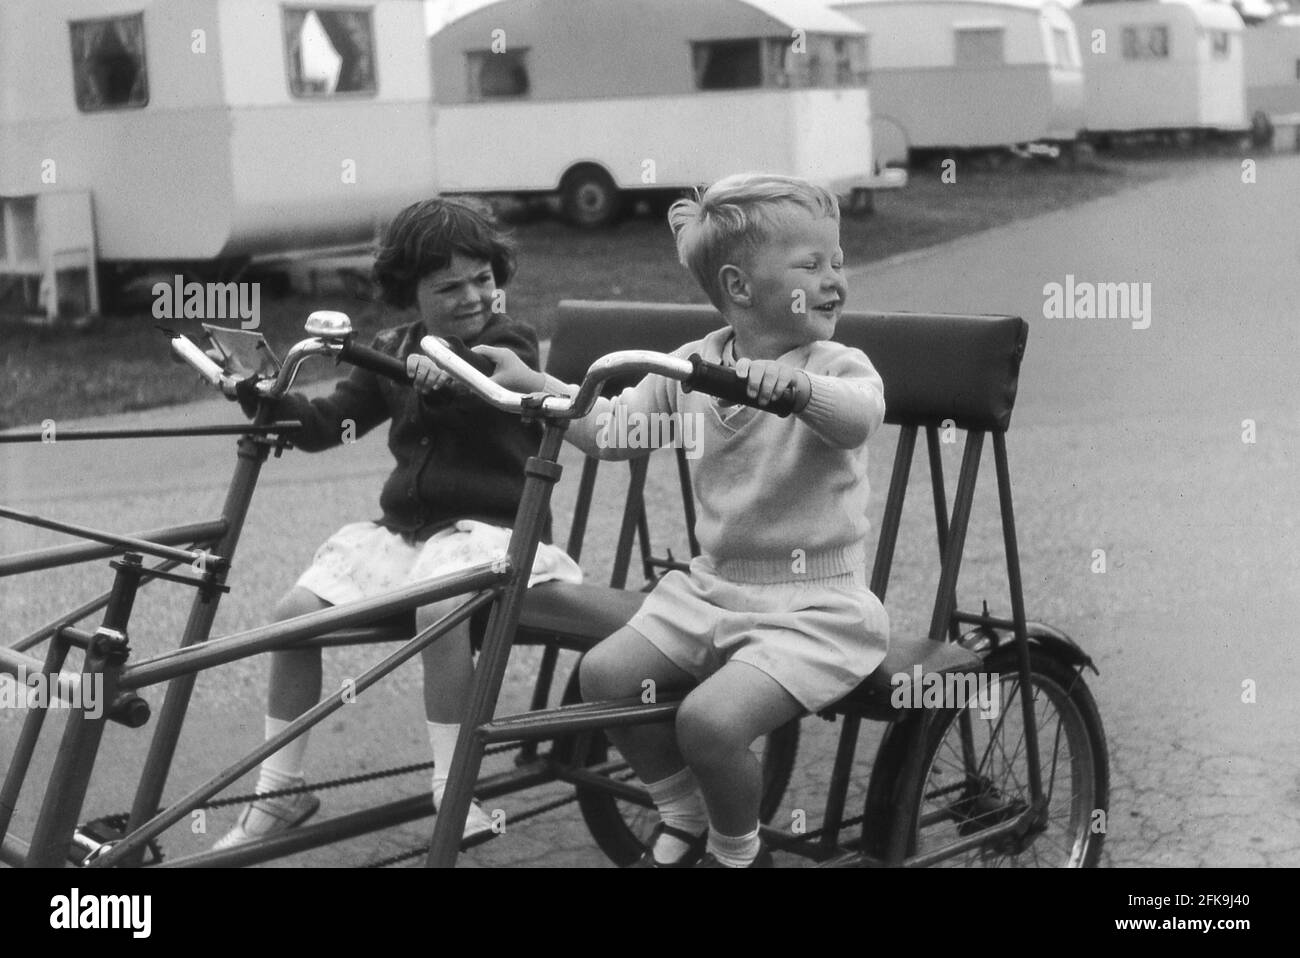 1964, historique, à l'extérieur sur un chemin dans un garage de vacances, un jeune garçon avec sa petite sœur, assis sur un grand 'camp de vacances' avec cadre en métal double ou deux places, Suffolk, Angleterre, Royaume-Uni. Ces vélos à deux places étaient très amusants et un bon moyen de se déplacer sur le site sur les grands sentiers. Banque D'Images